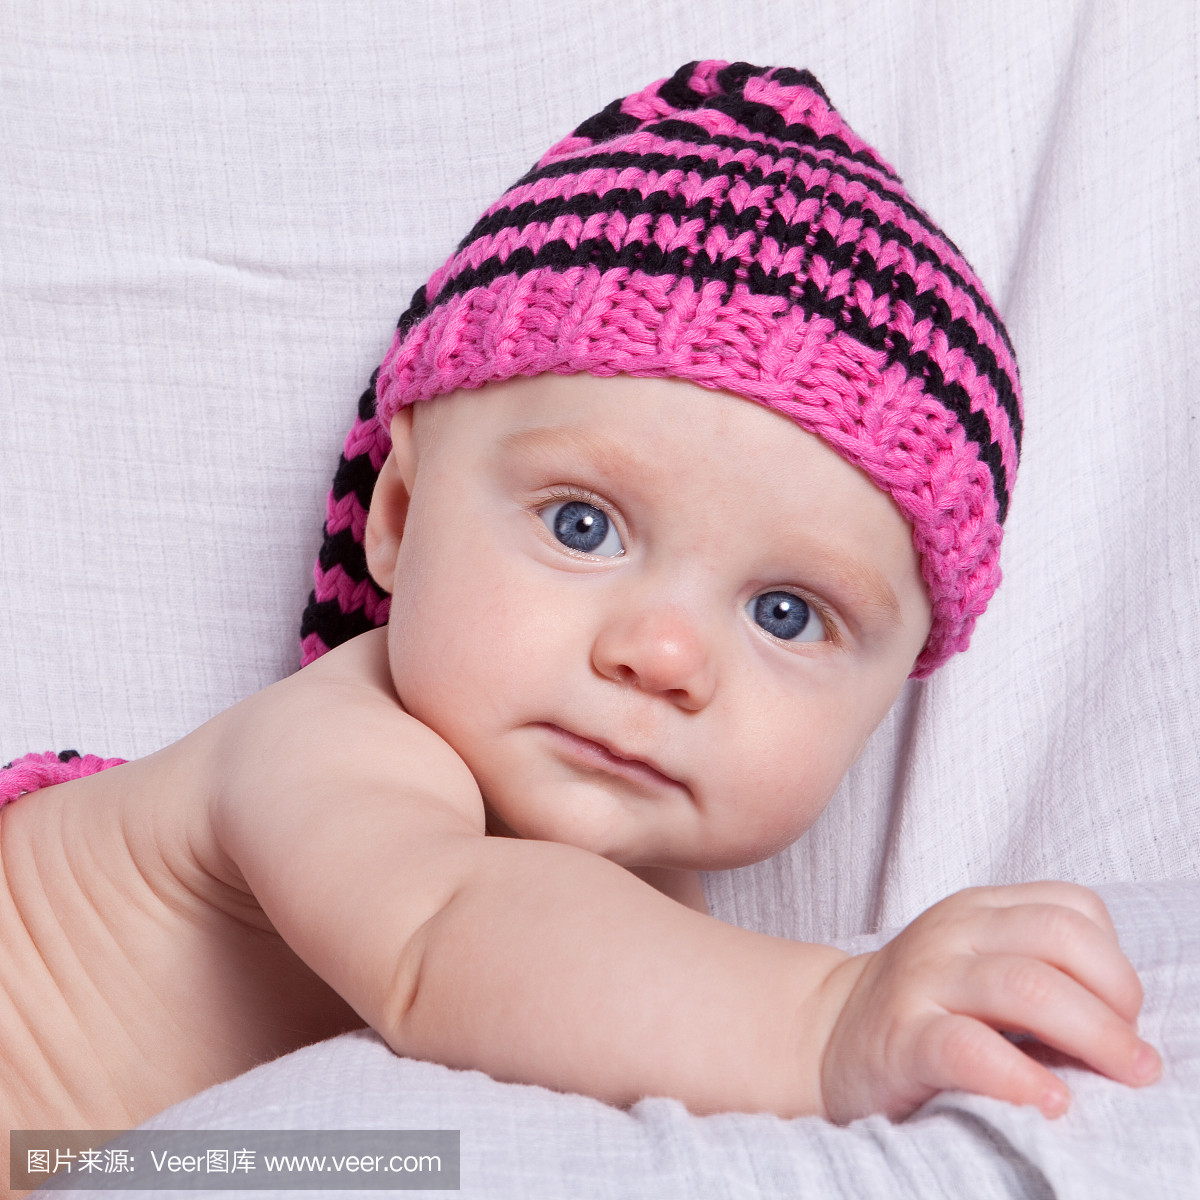 可爱的女婴穿着针织帽子